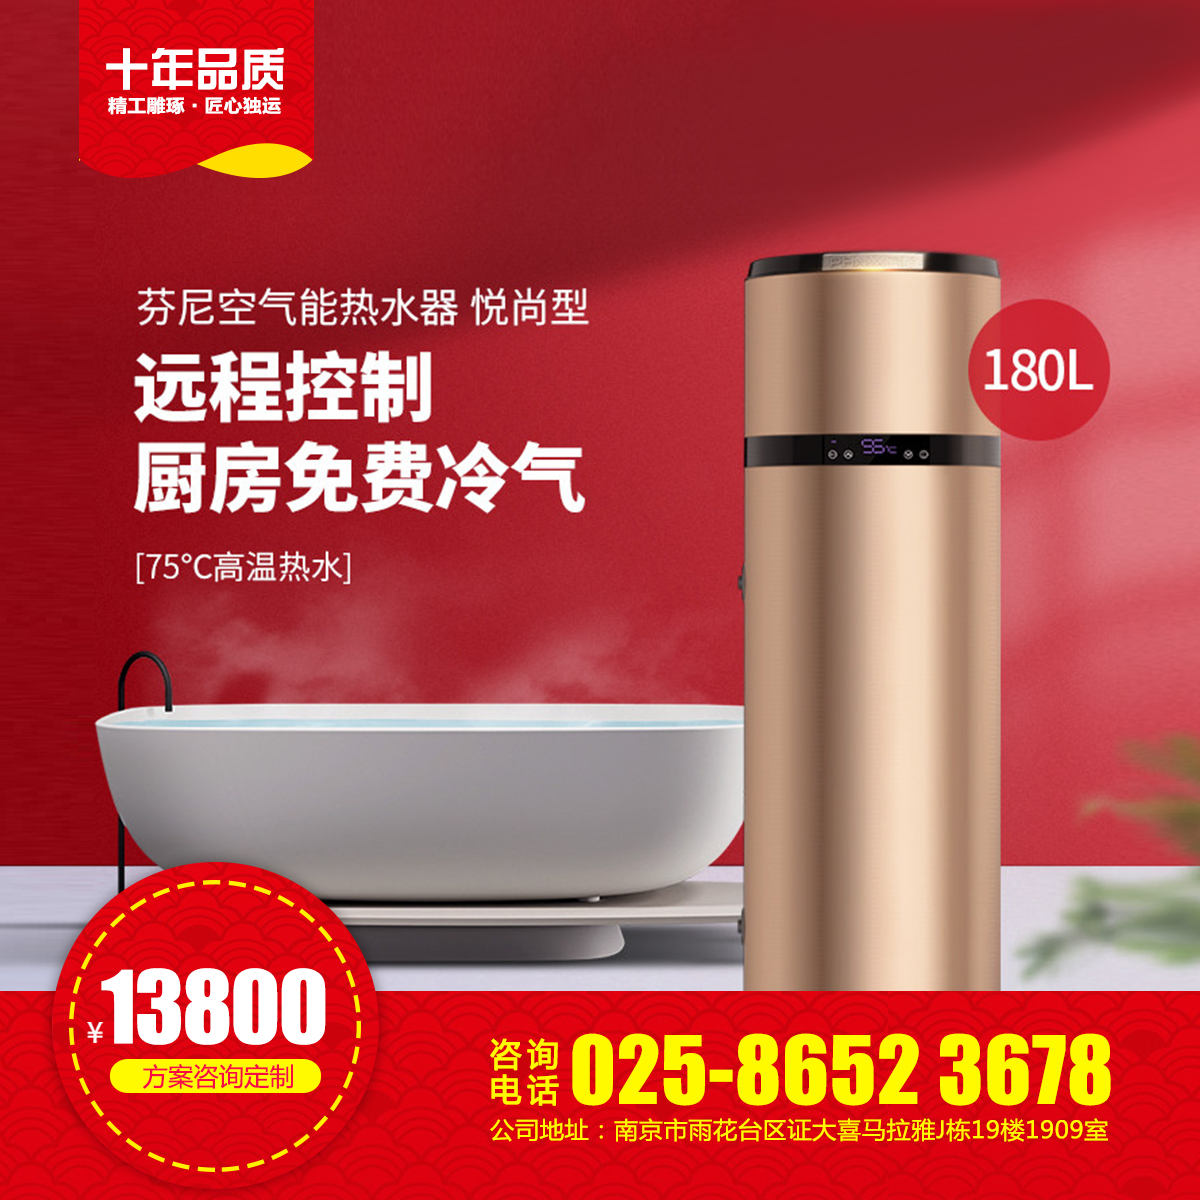 南京空气能热水器悦尚型180L 家用热水器